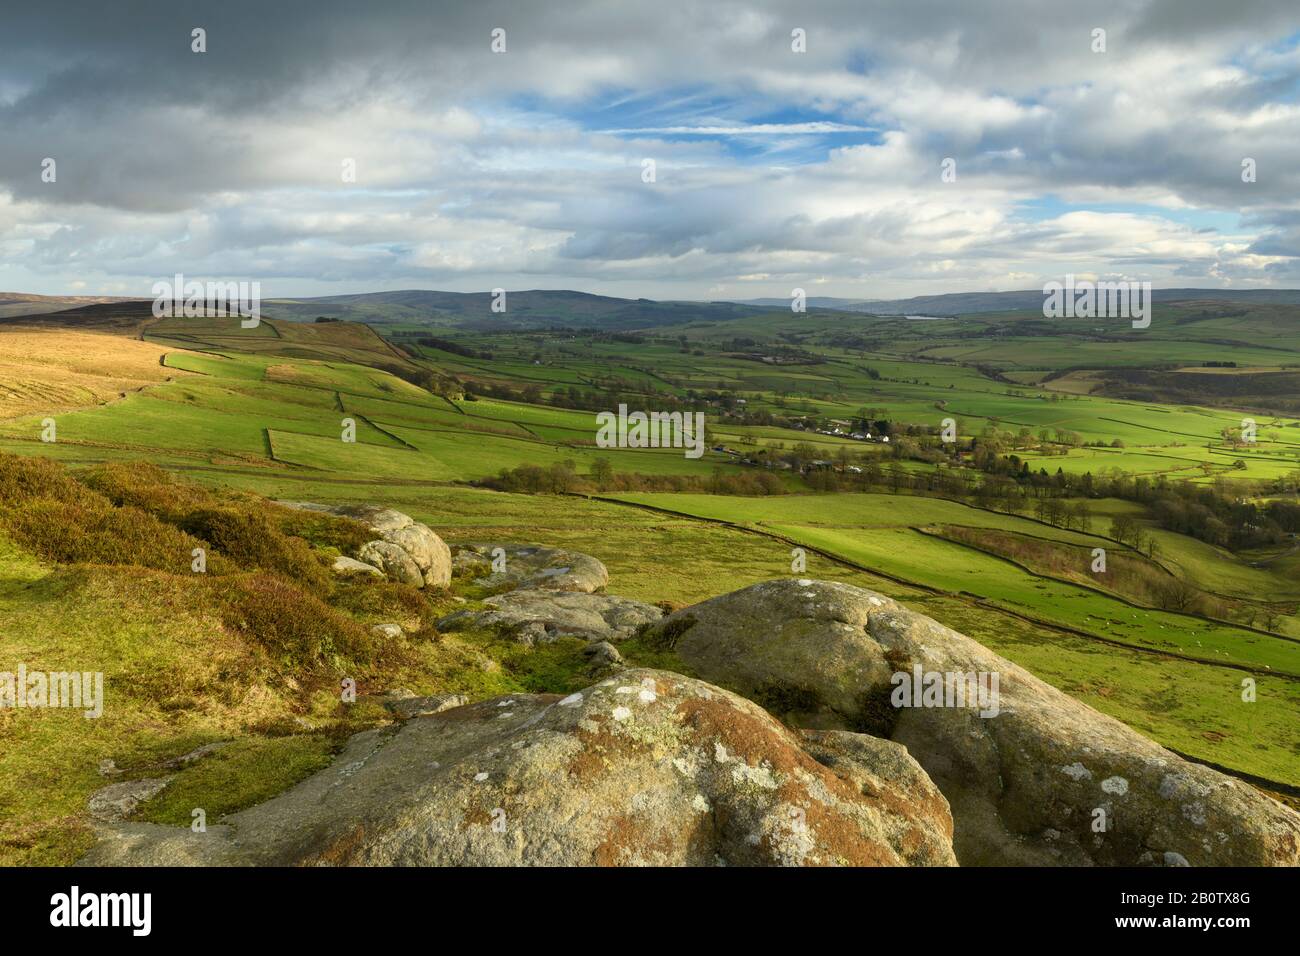 Vue panoramique sur la campagne depuis Embsay Crag (coquillages ou landes éclairés au soleil, champs de ferme dans la vallée, hautes collines hautes hautes, ciel spectaculaire) - Yorkshire du Nord, Angleterre, Royaume-Uni. Banque D'Images